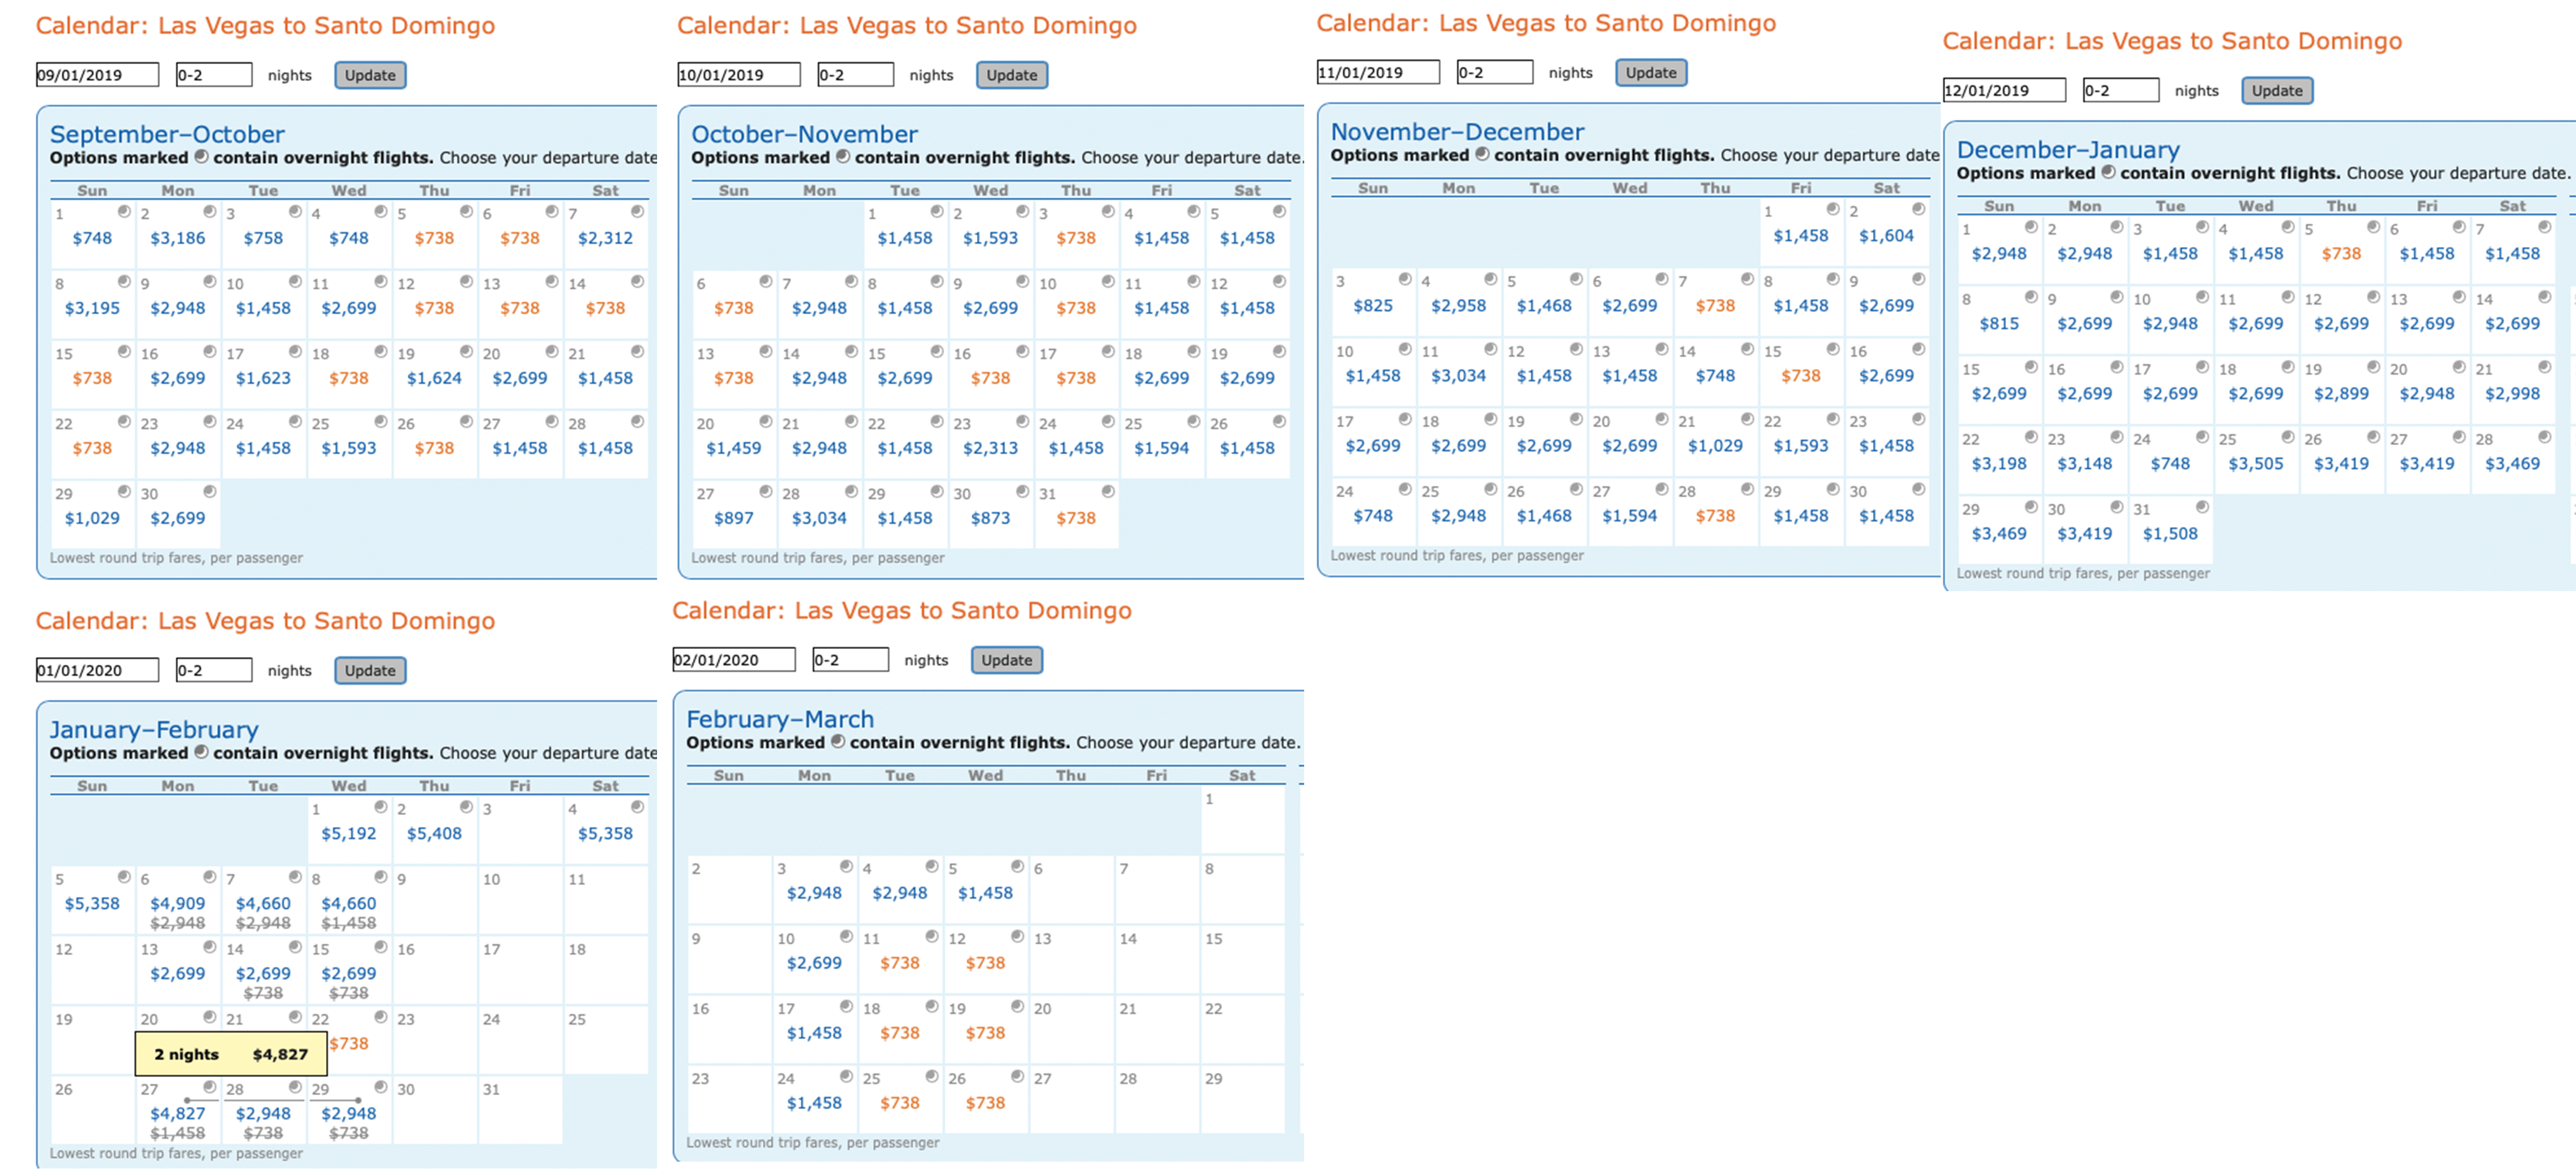 Calendar of Delta MQD run itineraries on Aeromexico from Las Vegas (LAS) to Santo Domingo (SDQ) Dominican Republic.